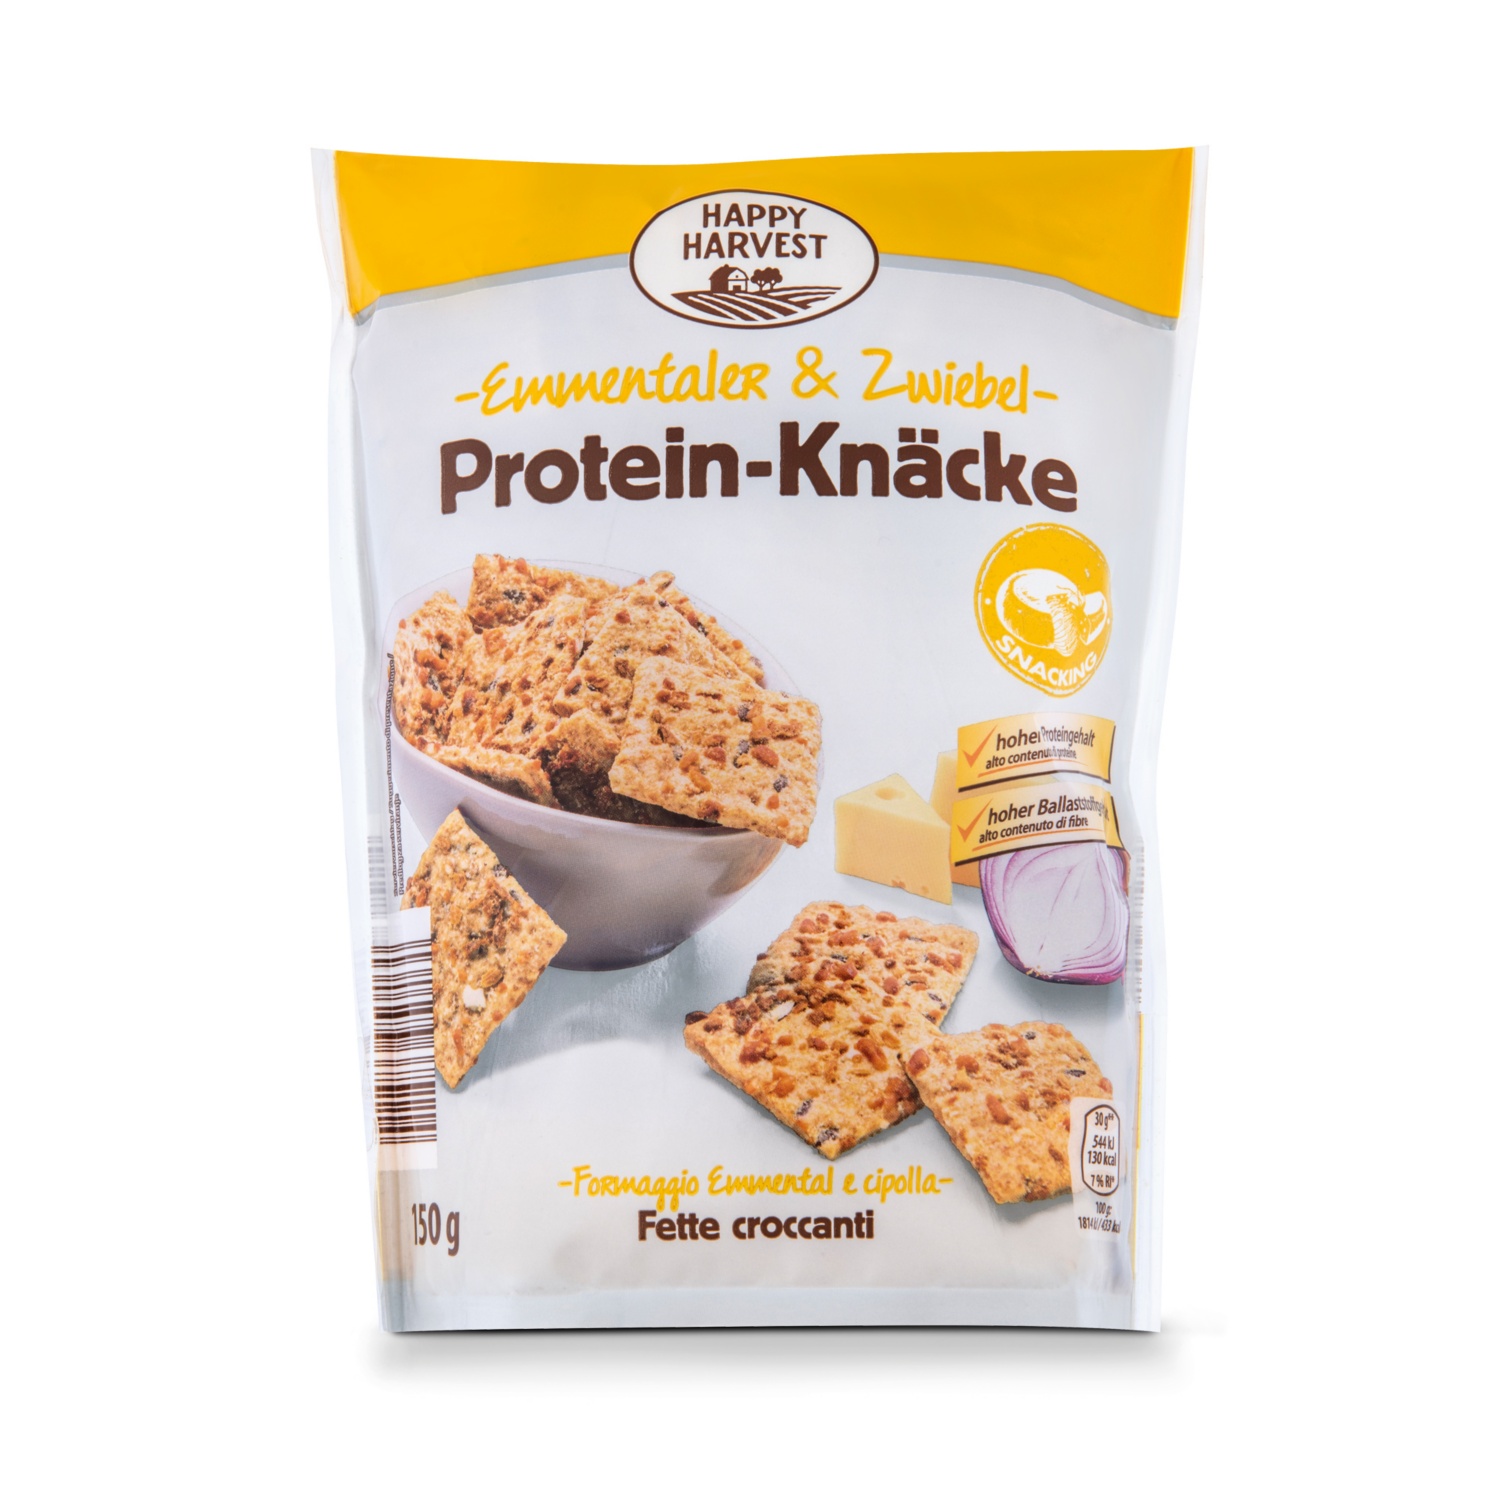 HAPPY HARVEST Protein Knäcke, Emmentaler-Zwiebel